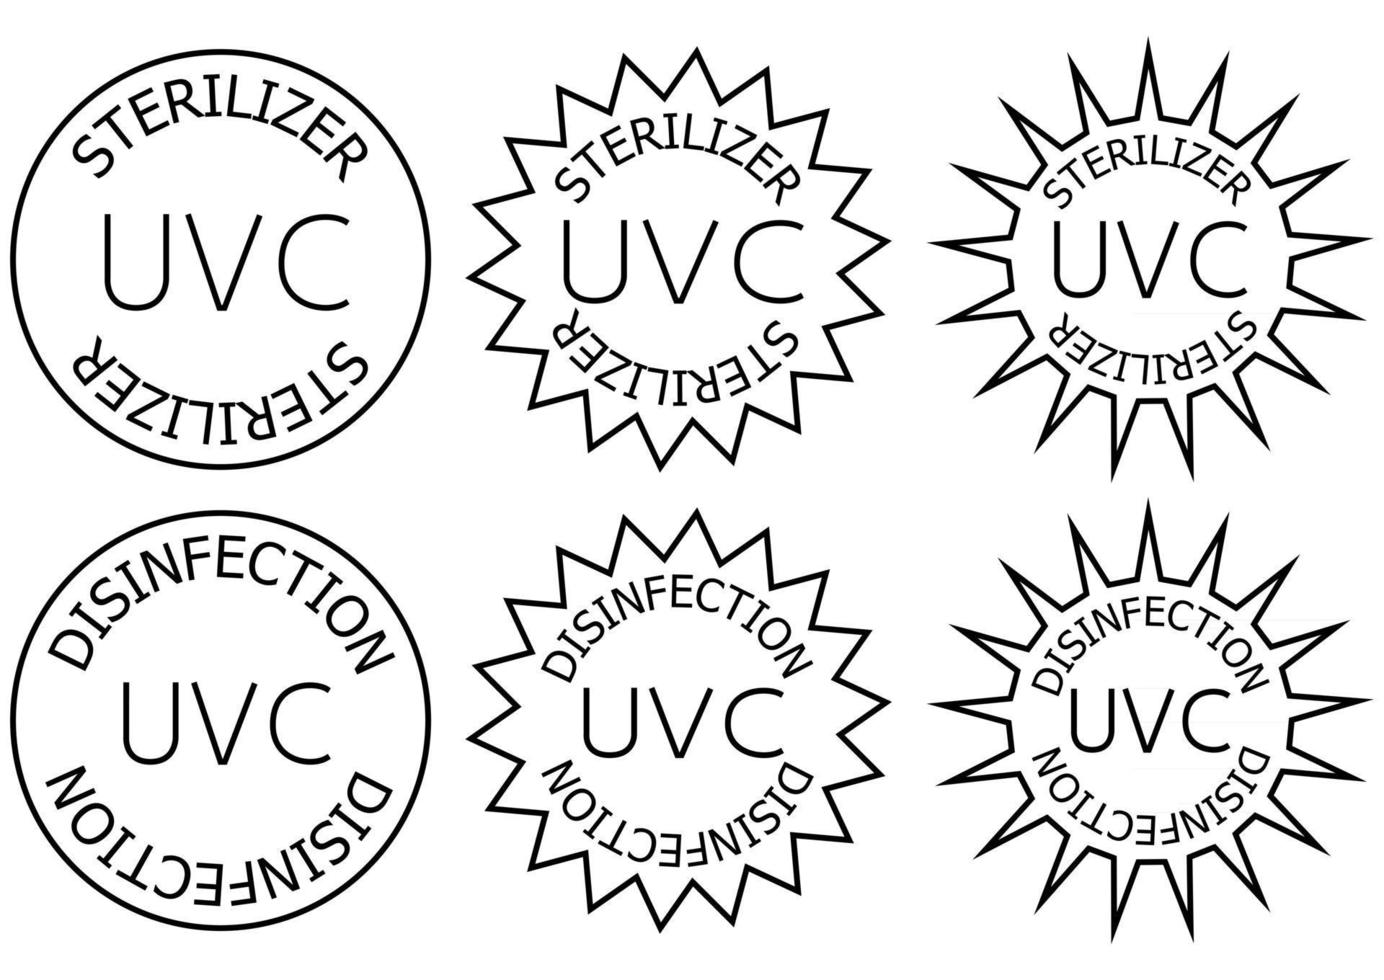 Esterilizador uvc y sello de desinfección señal de información del dispositivo de saneamiento vector